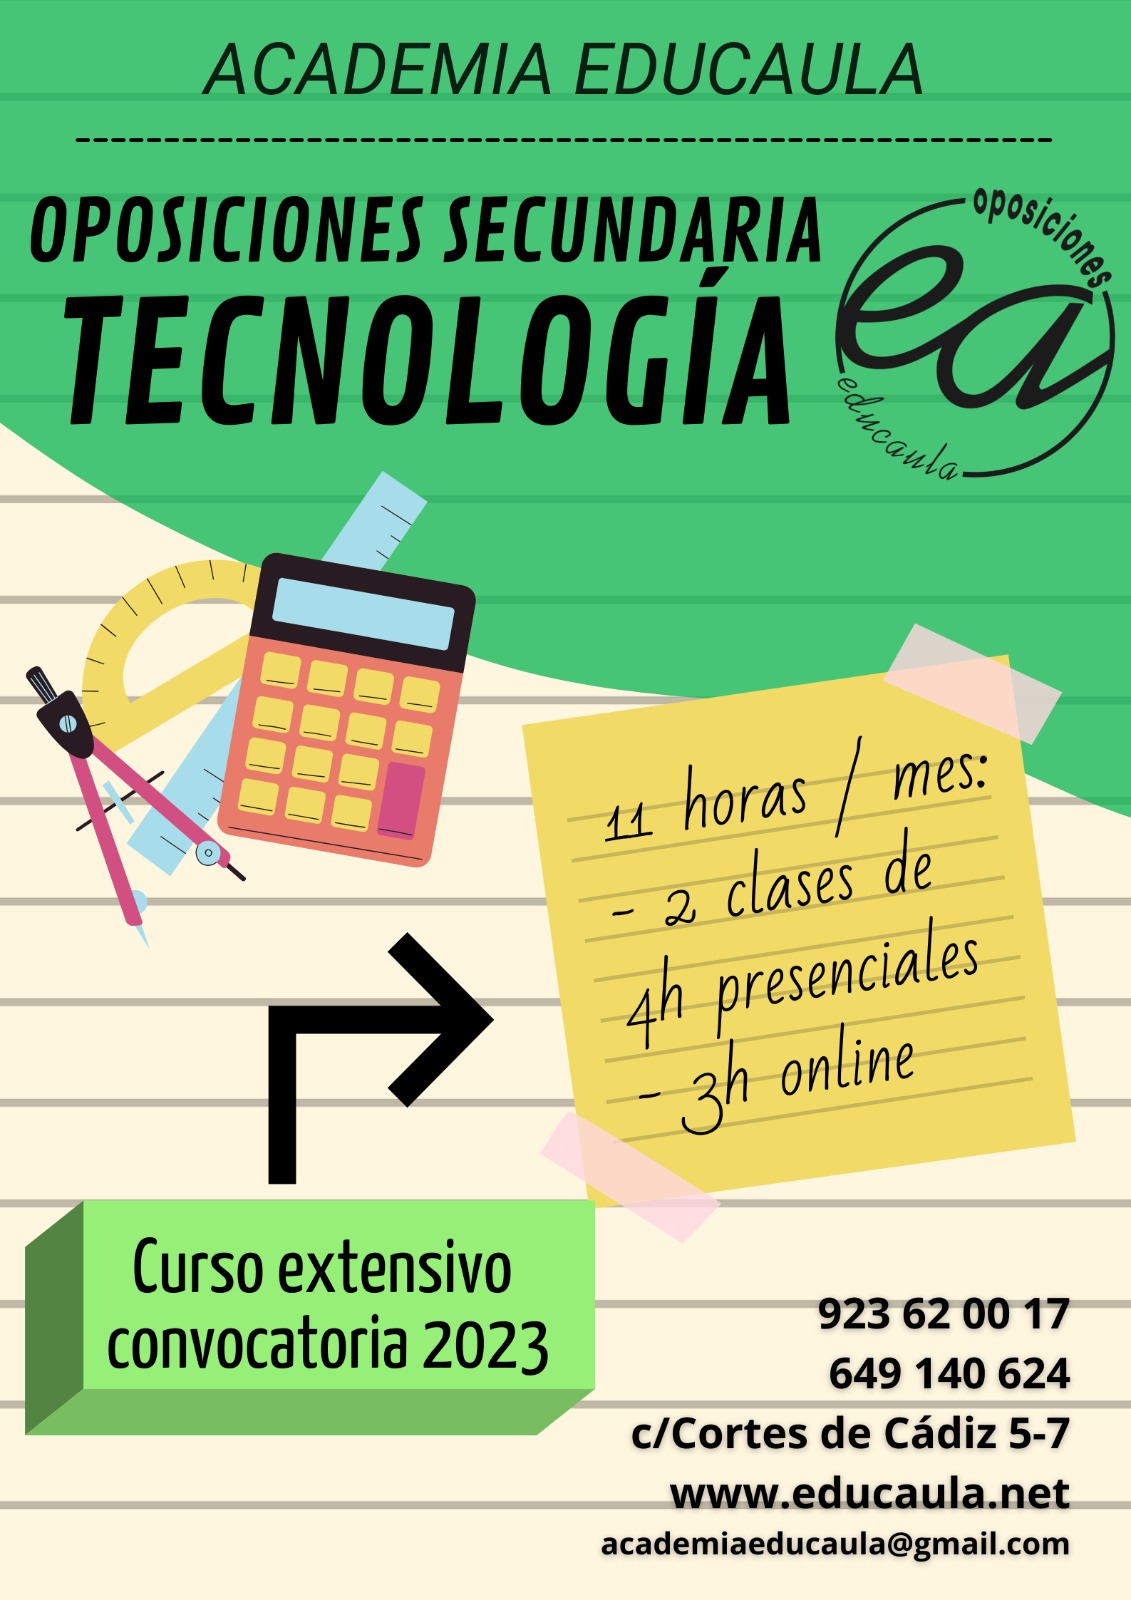 Preparación de oposiciones Tecnología del cuerpo de secundaria 2021-22 en EDUCAULA